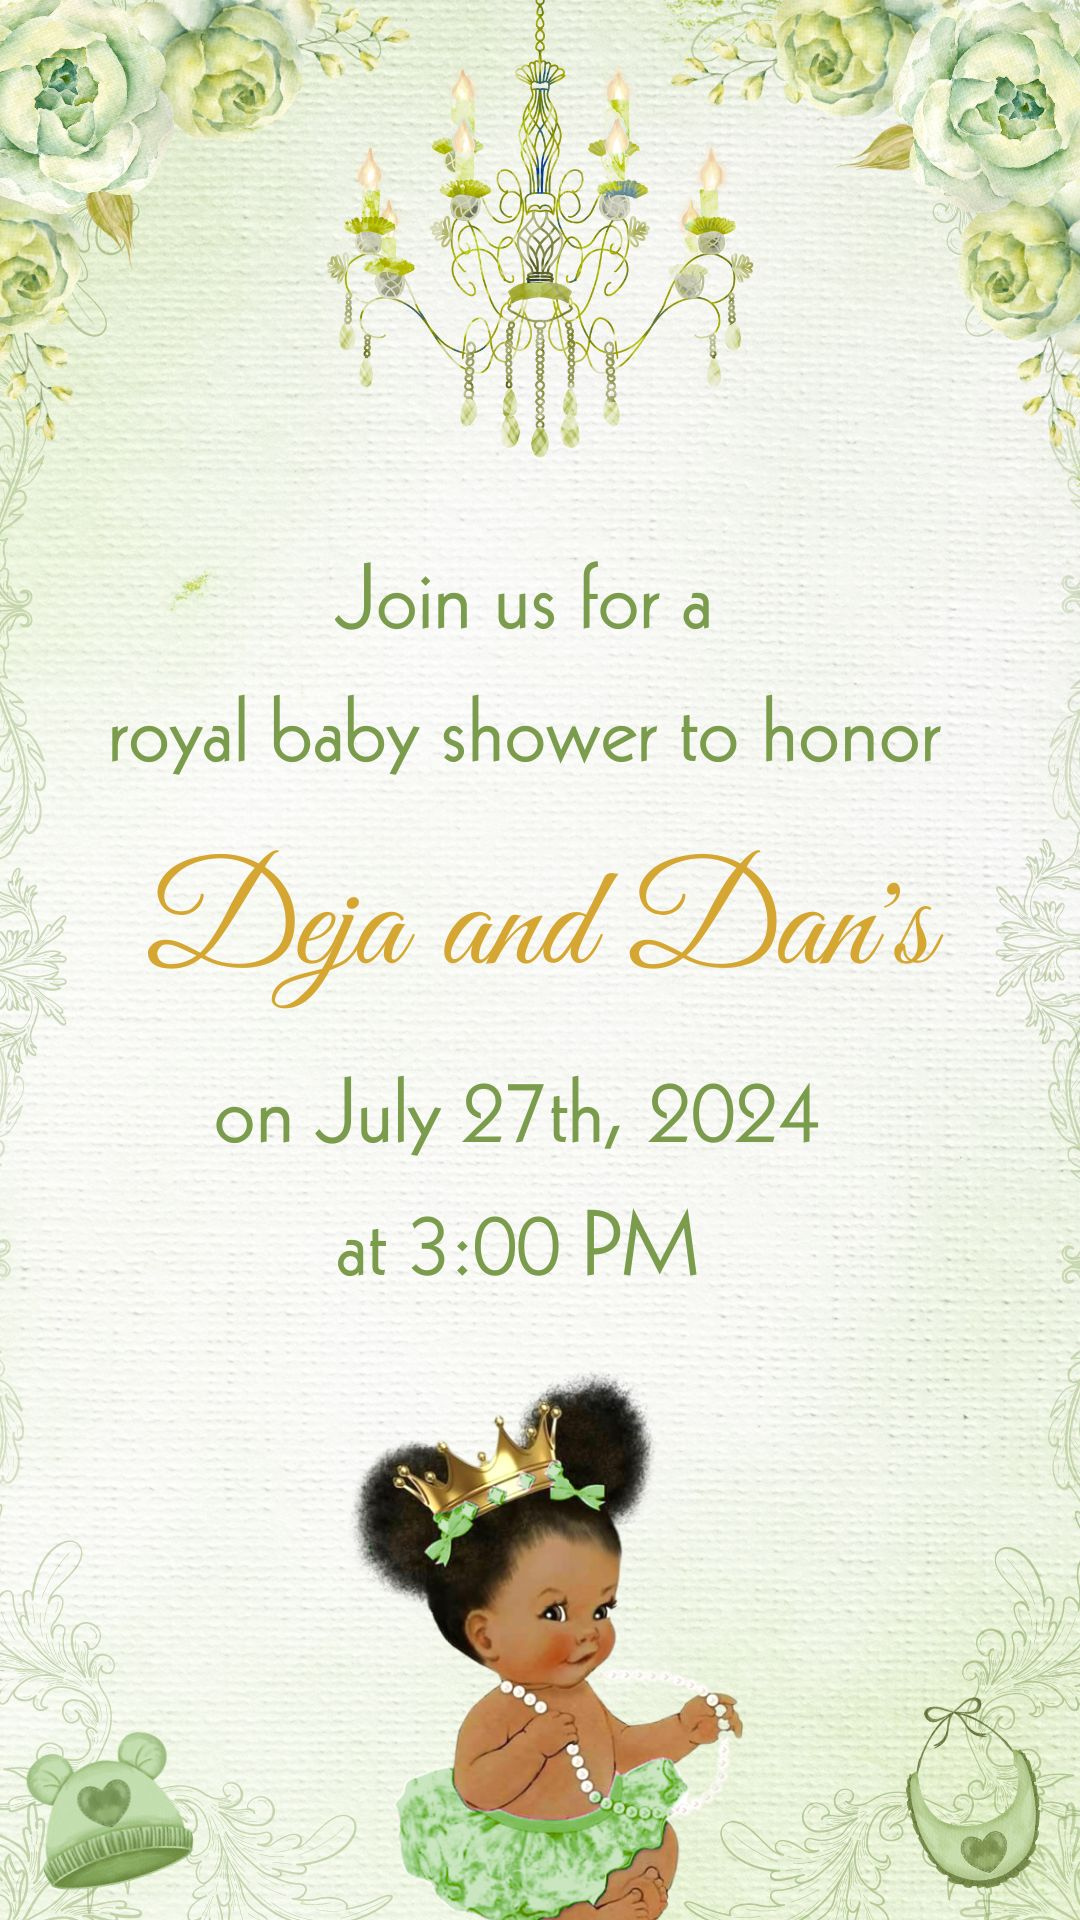 Little Princess Girl Baby Shower Video Invitation - Little Princess Green Theme Baby Shower Digital Invite